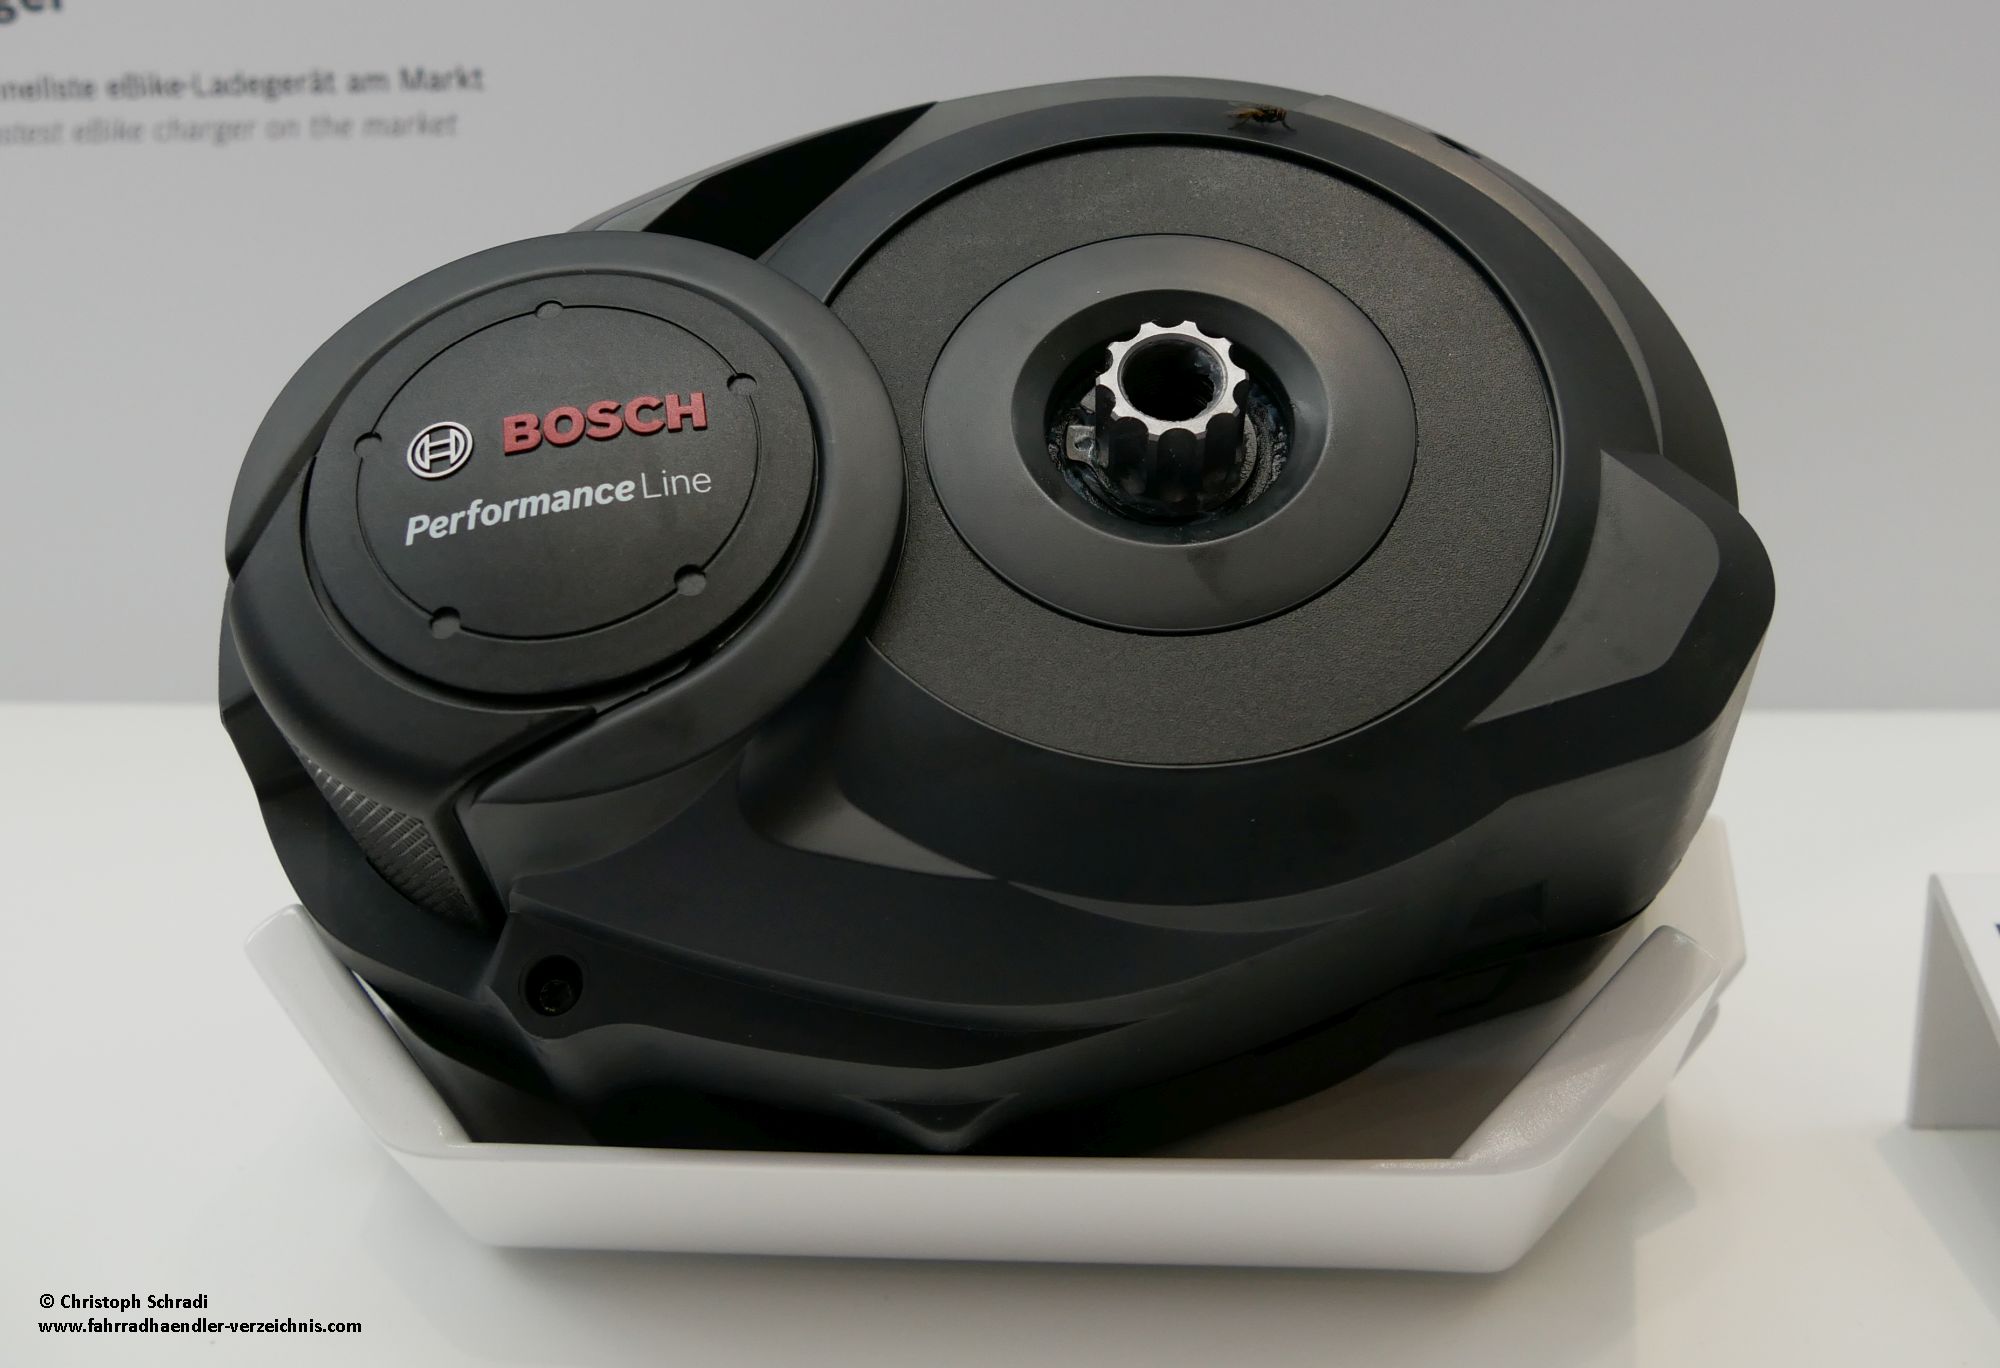 Die Performance Line von Bosch ist zwar schon etwas länger auf dem Markt, hat sich mit ihren 63 Nm Drehmoment aber vor allem im Tourenbereich bewährt